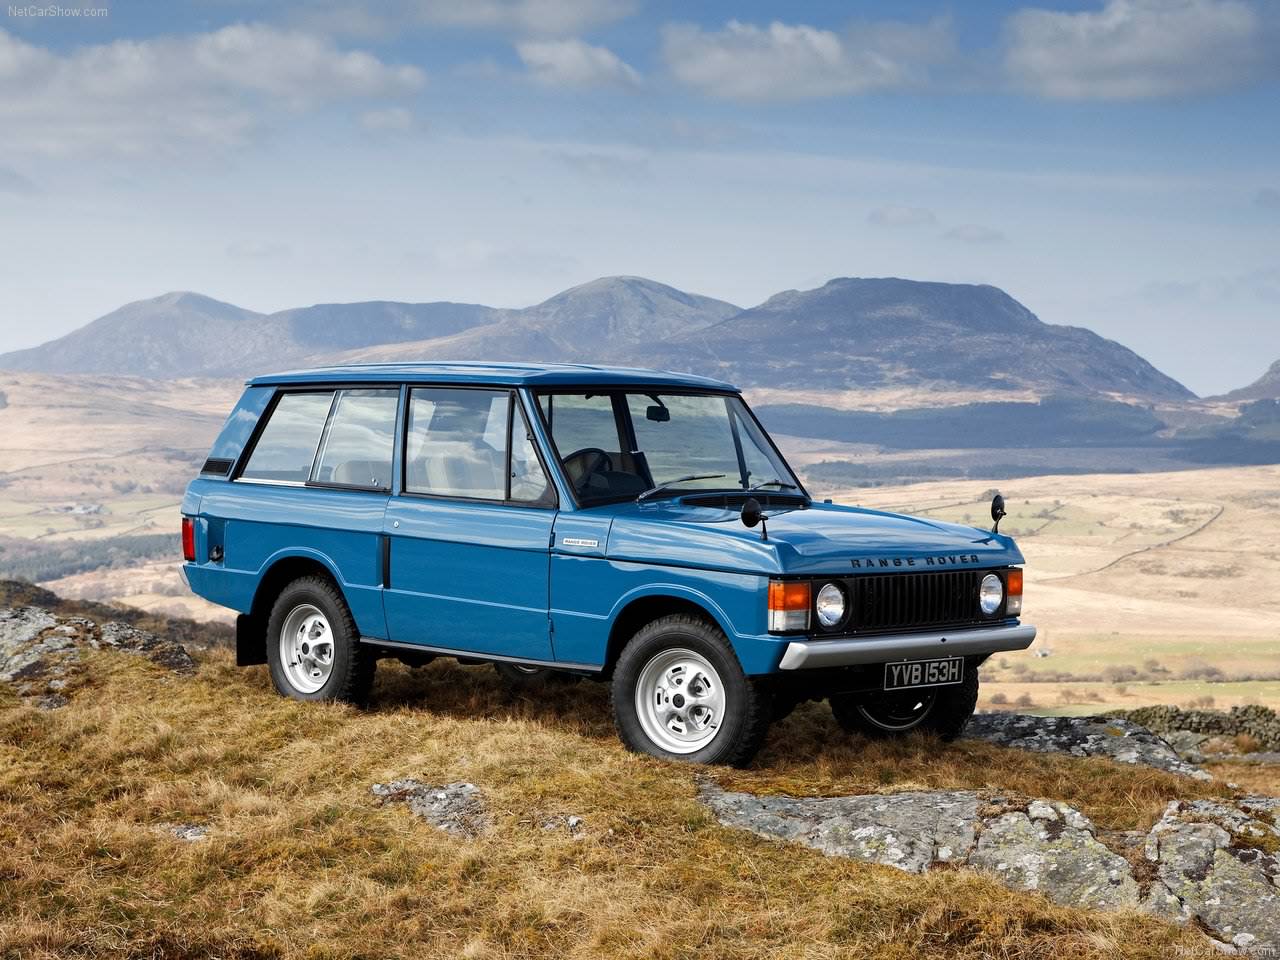 HQ Land Rover Auto Car: 1970 Land Rover Range Rover